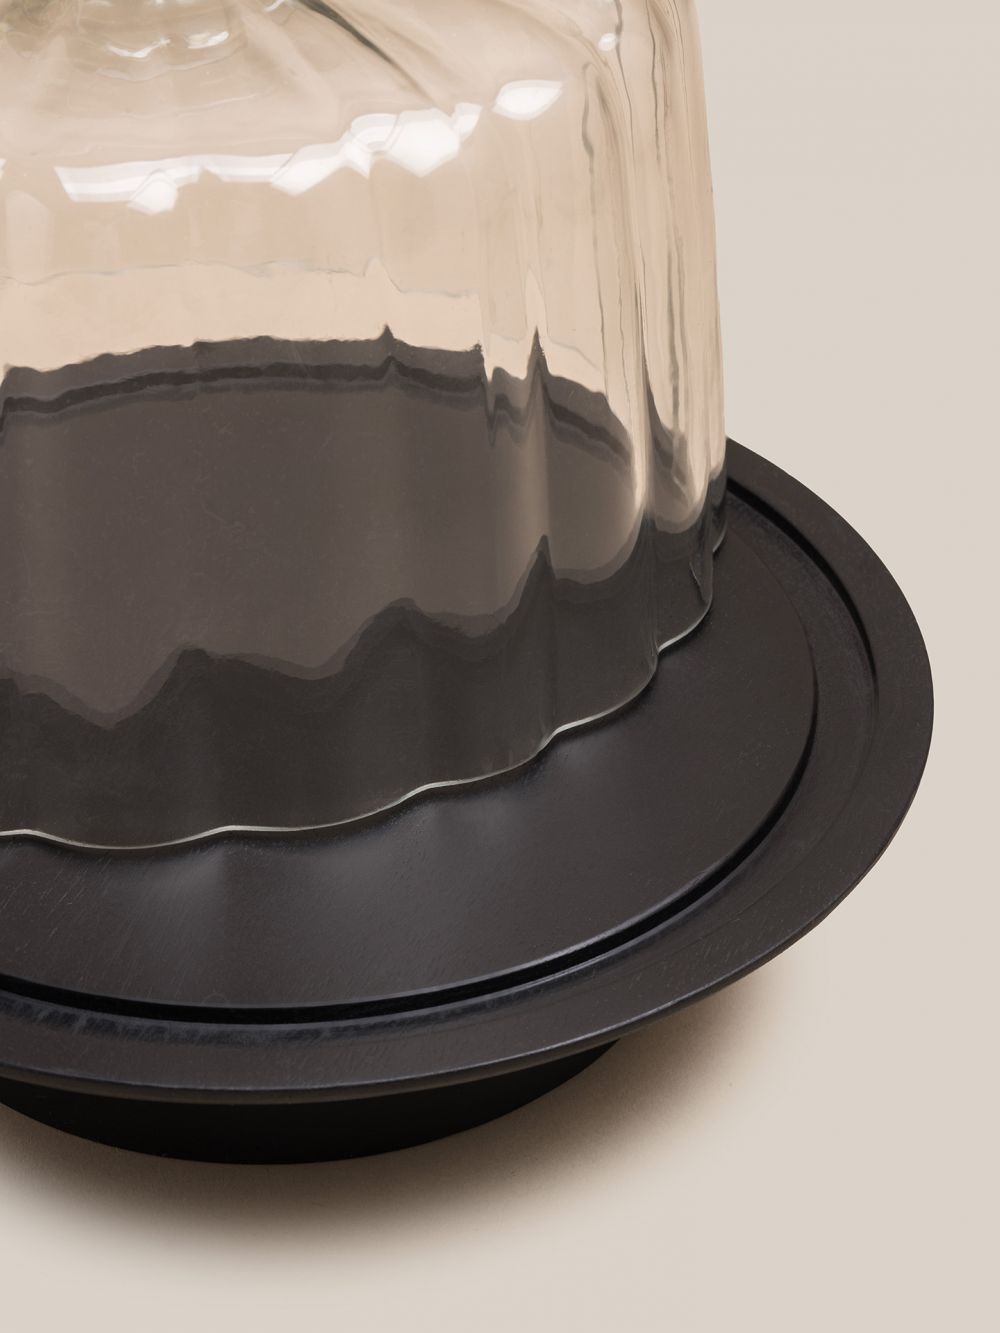 פעמון לעוגה זכוכית ועץ שחור 25 ס”מ